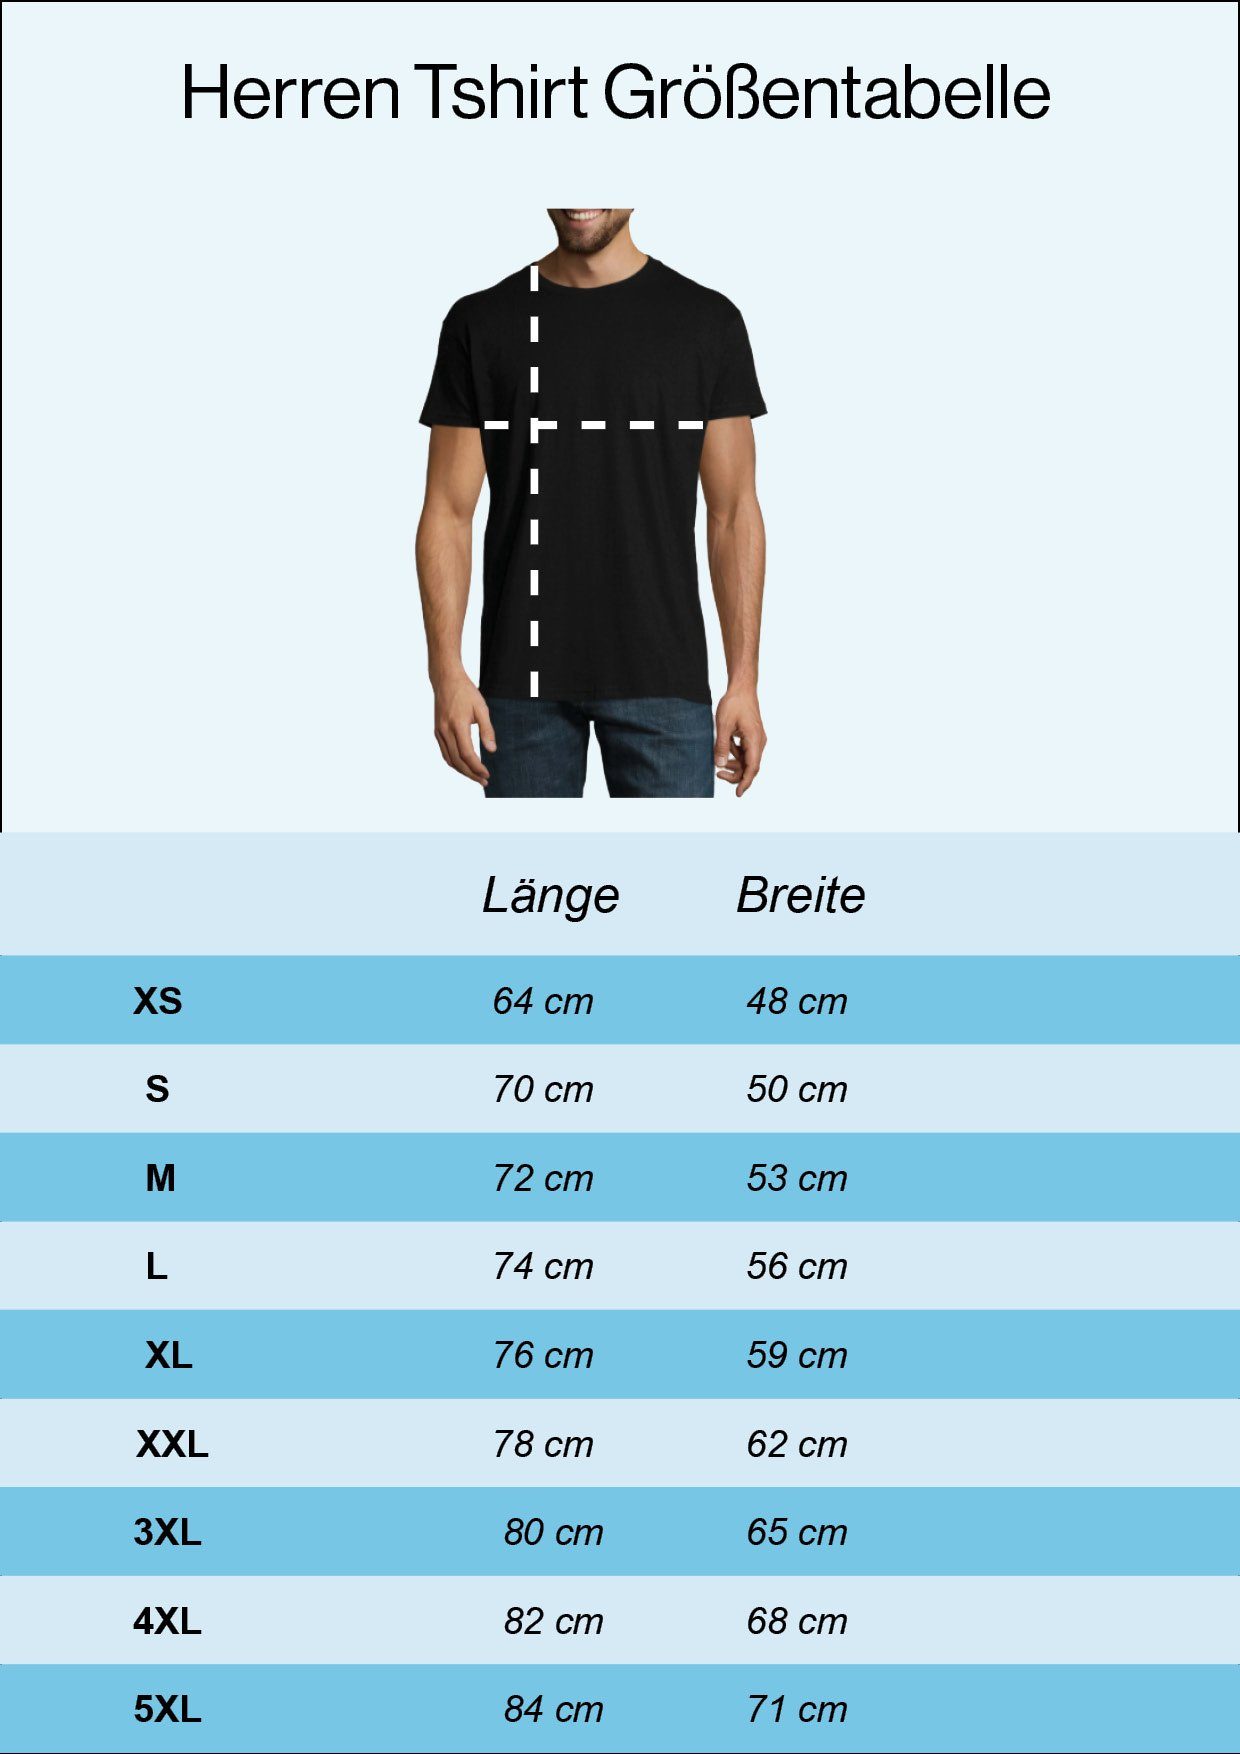 40 Gutaussehend Frontprint Shirt Designz lustigem Spruch Herren mit Grau T-Shirt und Youth